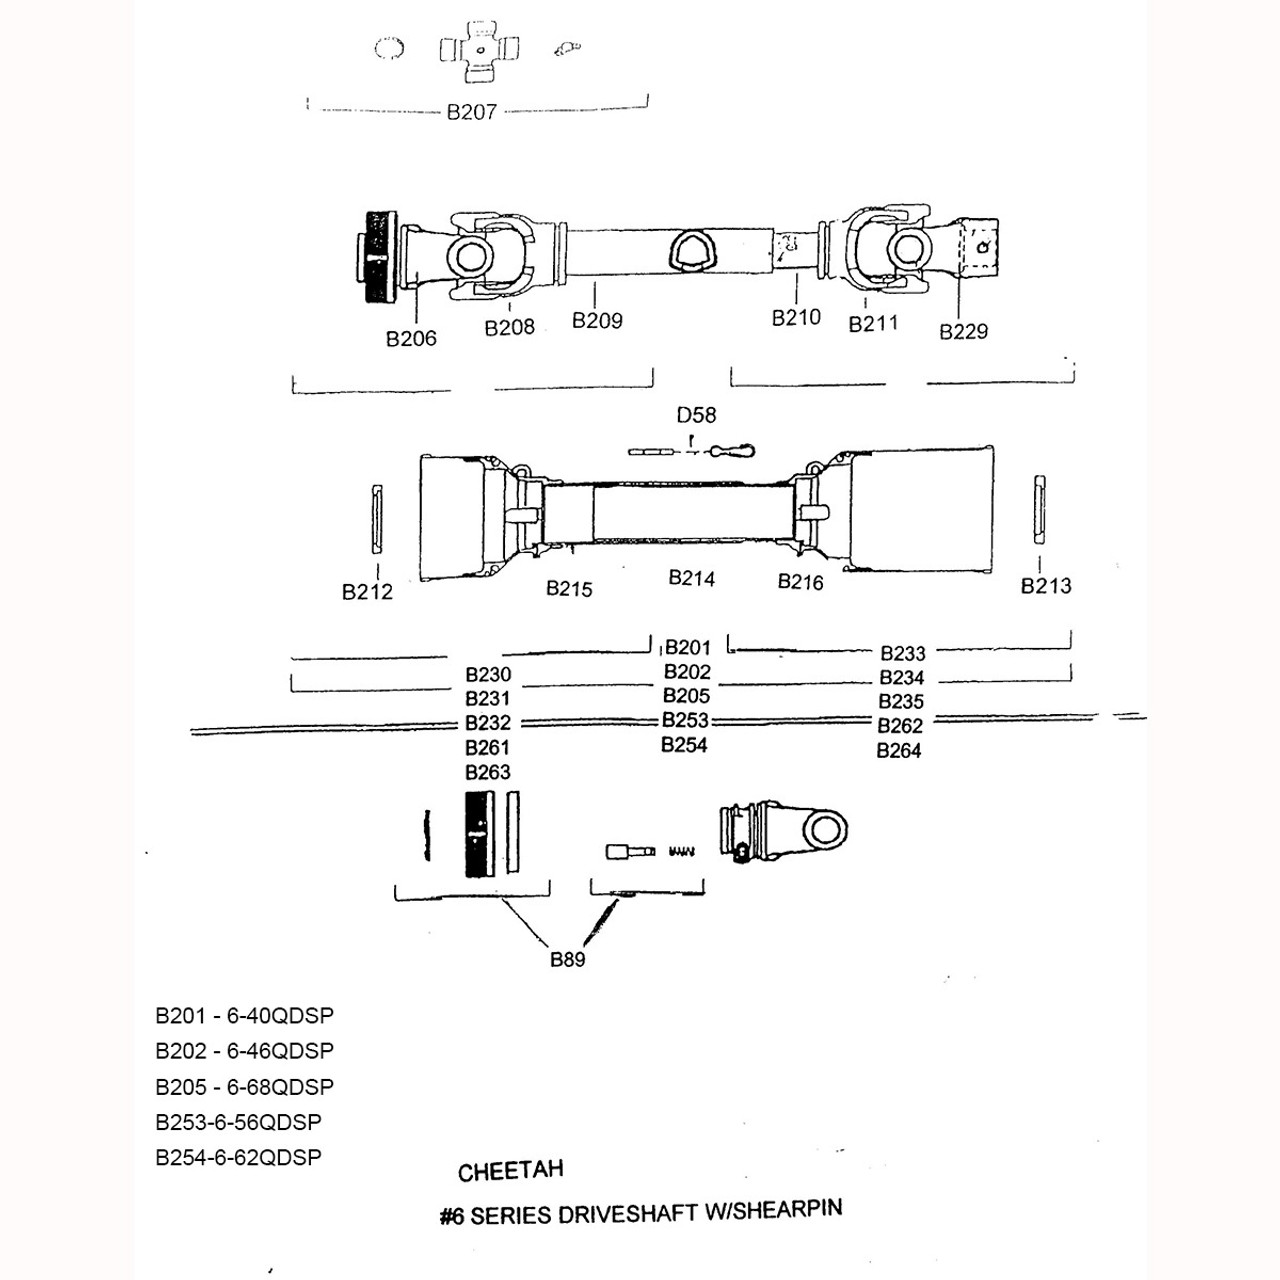 6-56QDSP Parts Diagram